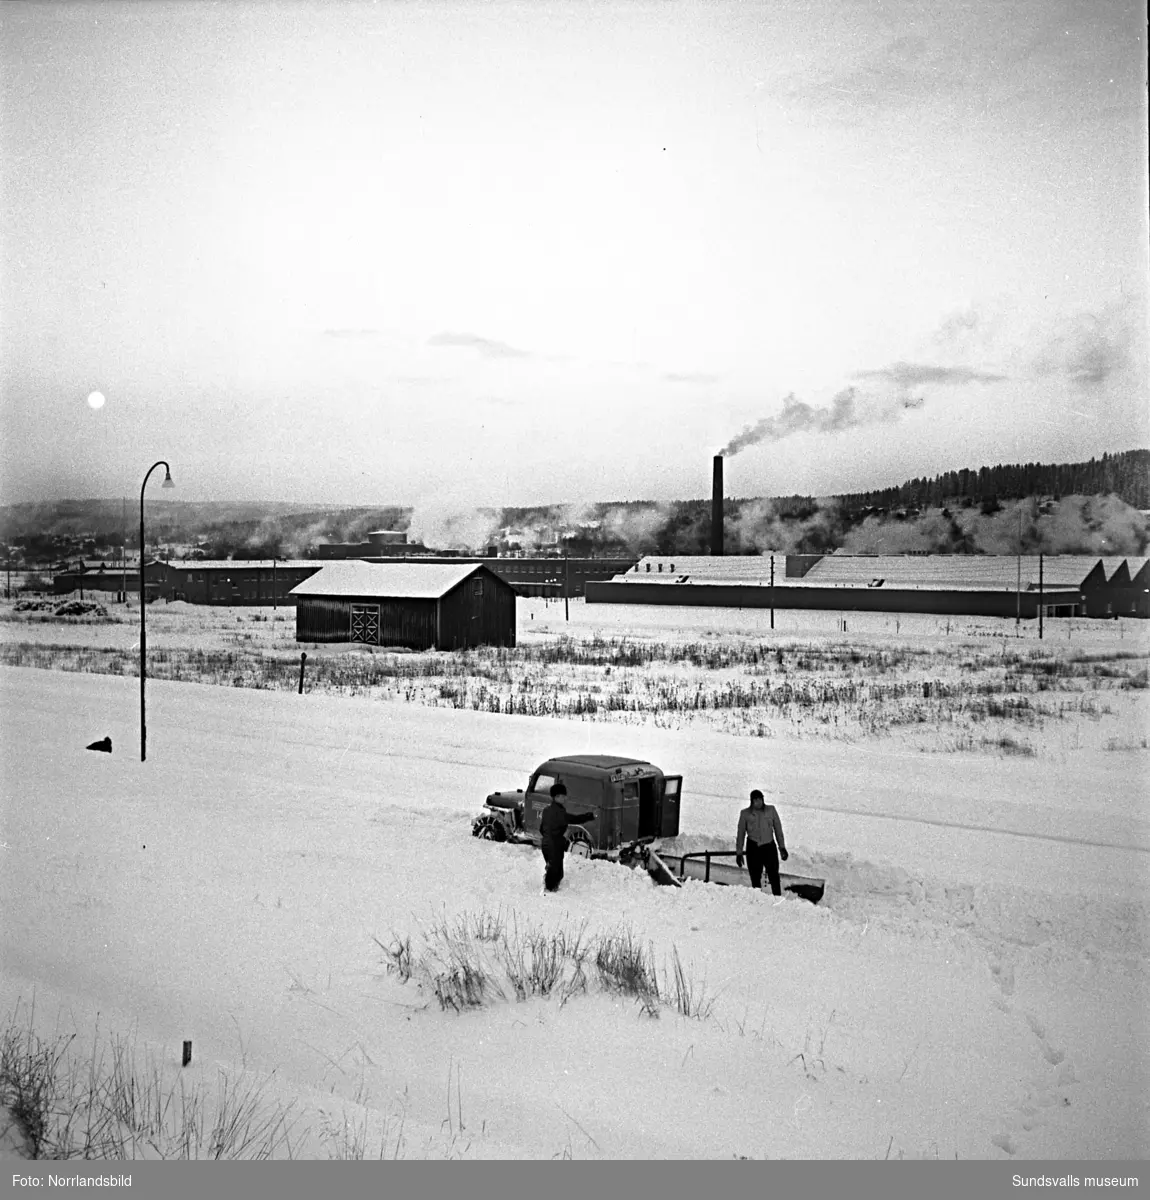 Efter ett rejält snöfall i december 1949 var det full huggning för stadens snöröjare. Elva mil gator och vägar skulle röjas och sandas, själva plogningen sköttes maskinellt men när det sedan var dags för bortforsling av snöhögar och vallar kom de fyrfota trotjänarna fortfarande till sin rätt.  Här är det Axel Svensson som styr Diana nedför Esplanaden för att tippa ännu ett snölass i Selångersån. Renhållningsverket hade 60 man i personalstyrkan vid den här tiden och hade tillgång till 15 lastbilar, varav tre moderna framhjulsdrivna som var mycket användbara i den backiga terrängen, elva snöplogar och två traktorer med snöskopa. Och så de åtta hästarna förstås. Vid katastroftillbud med osedvanlig halka eller hård snöstorm kunde man dessutom ta in 20-30 extra hästar och 20-100 extra arbetare. Den här vintern såg verkets chef, A.S. Nilsson, mycket fram emot en nymodighet på ingång till maskinparken, nämligen snöslungan. Bakom hästekipaget på en av bilderna syns den numera rivna biografen Röda Kvarn.